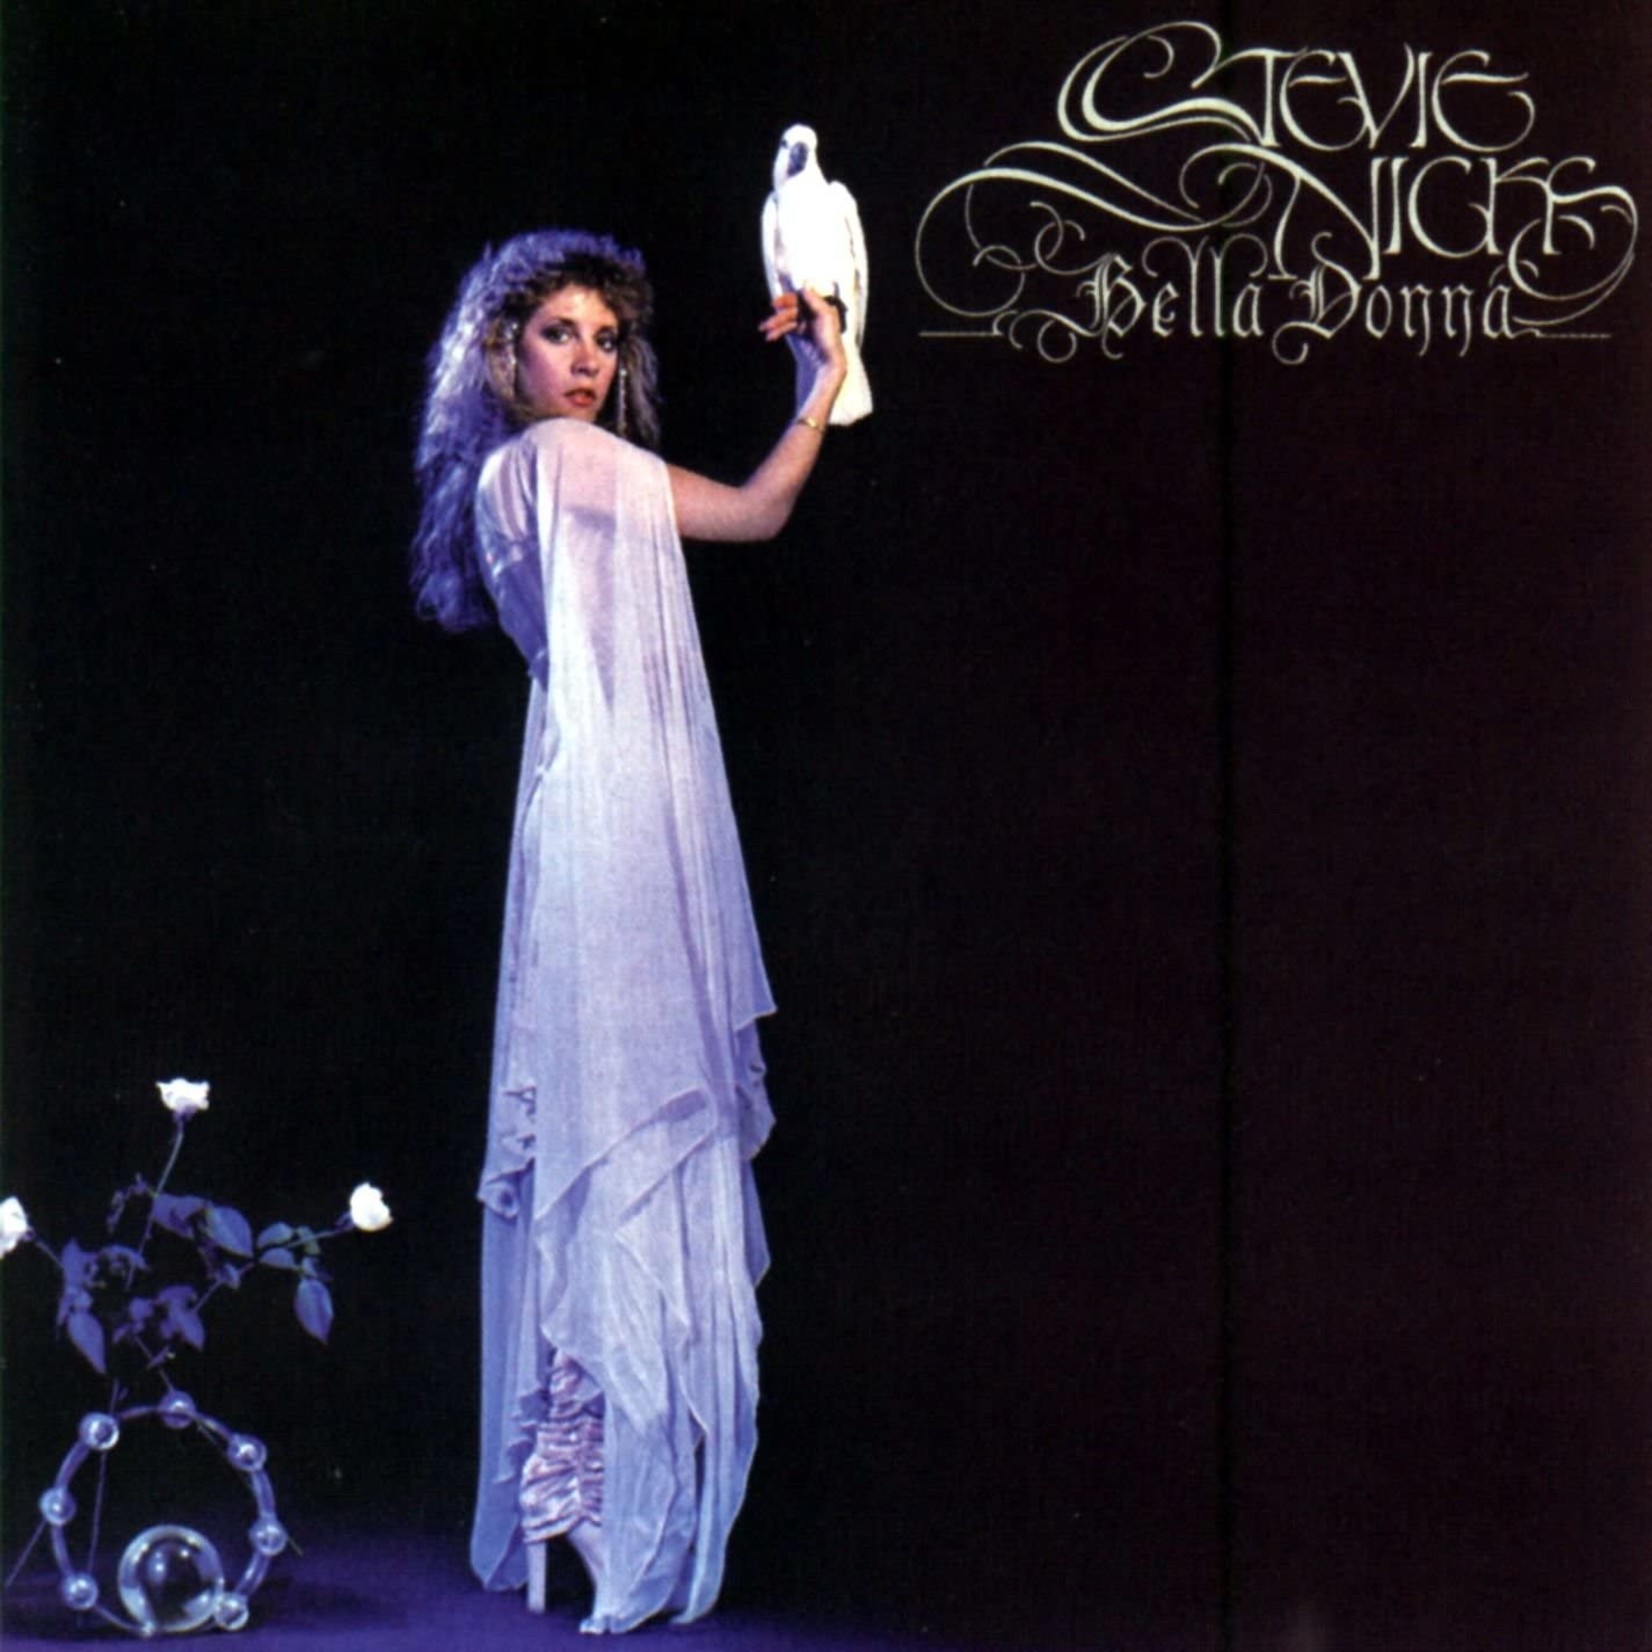 [Vintage] Stevie Nicks - Bella Donna